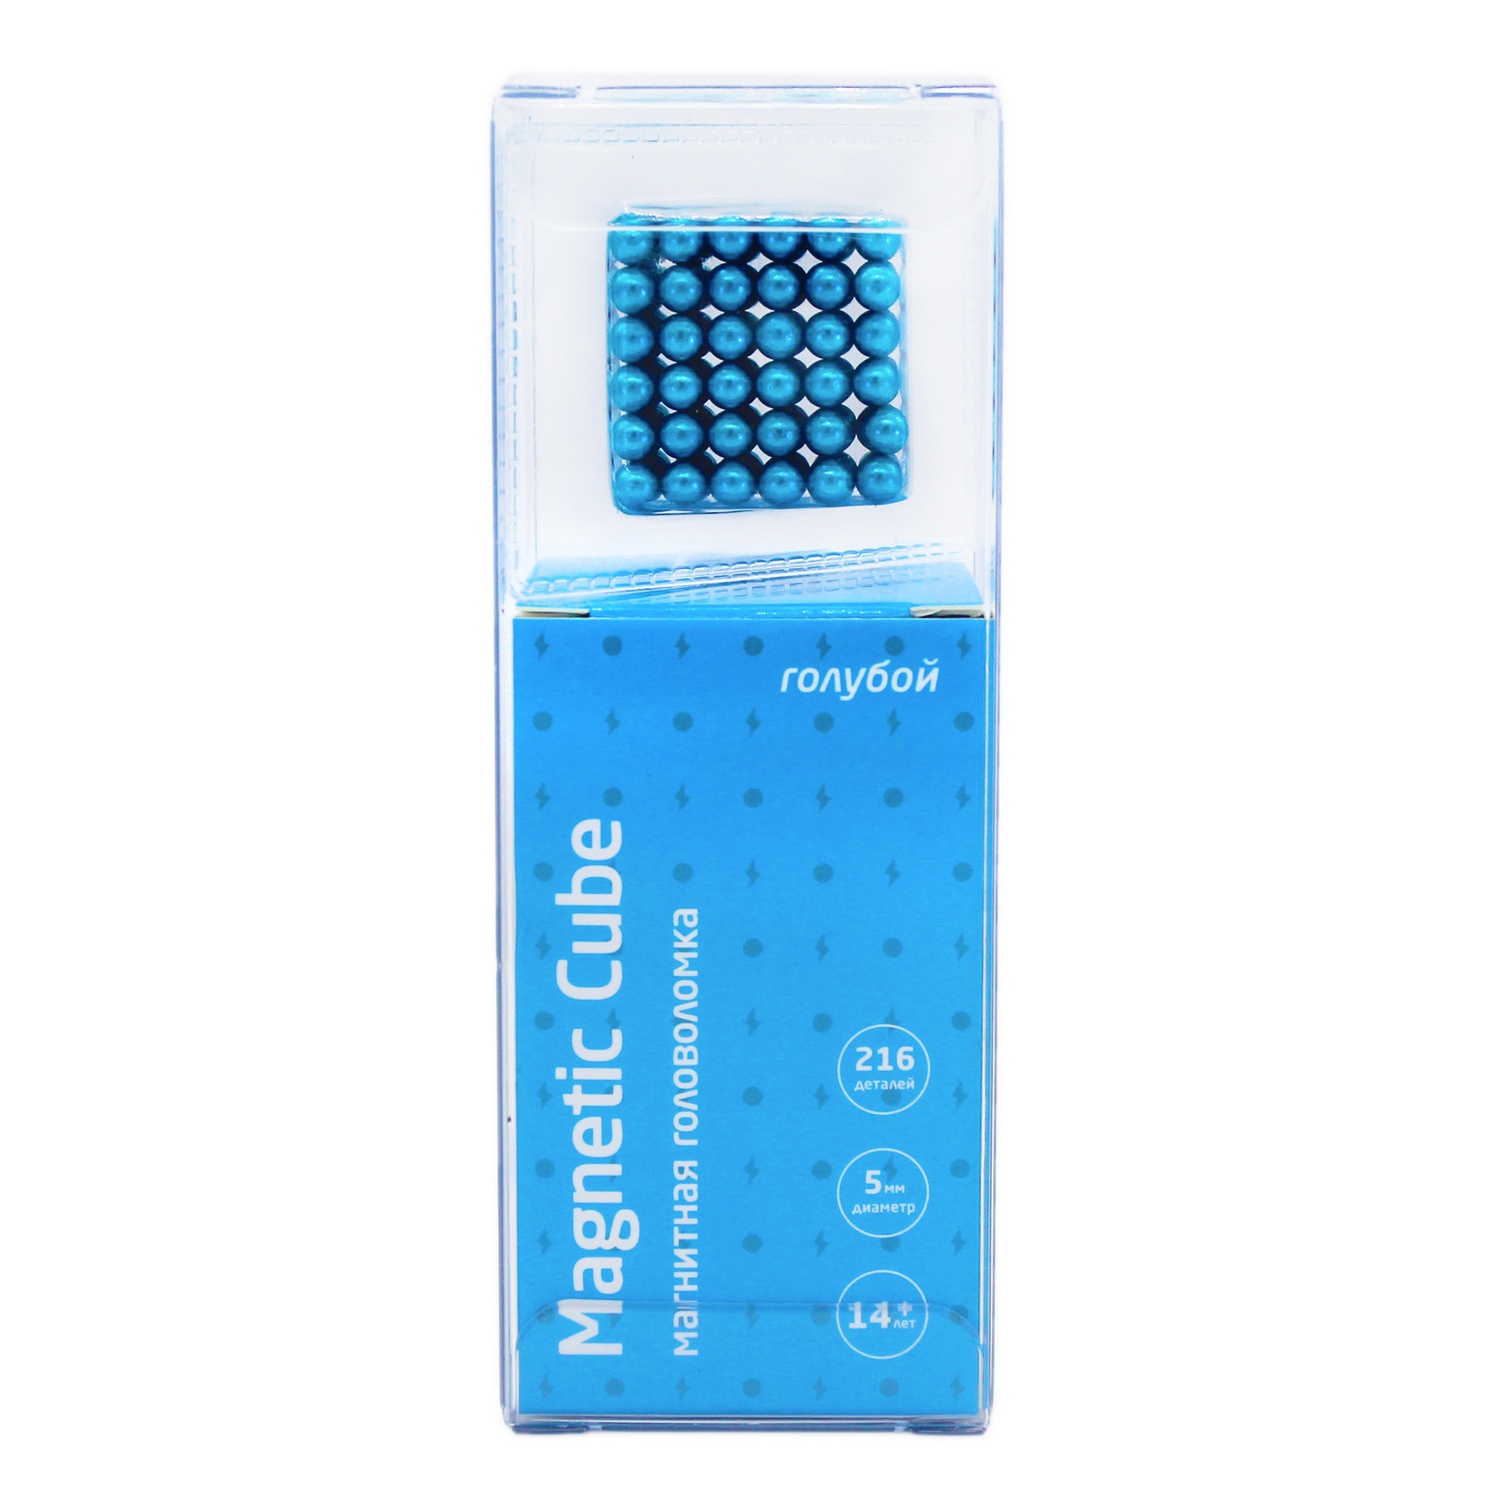 Головоломка магнитная Magnetic Cube голубой неокуб 216 элементов - фото 1